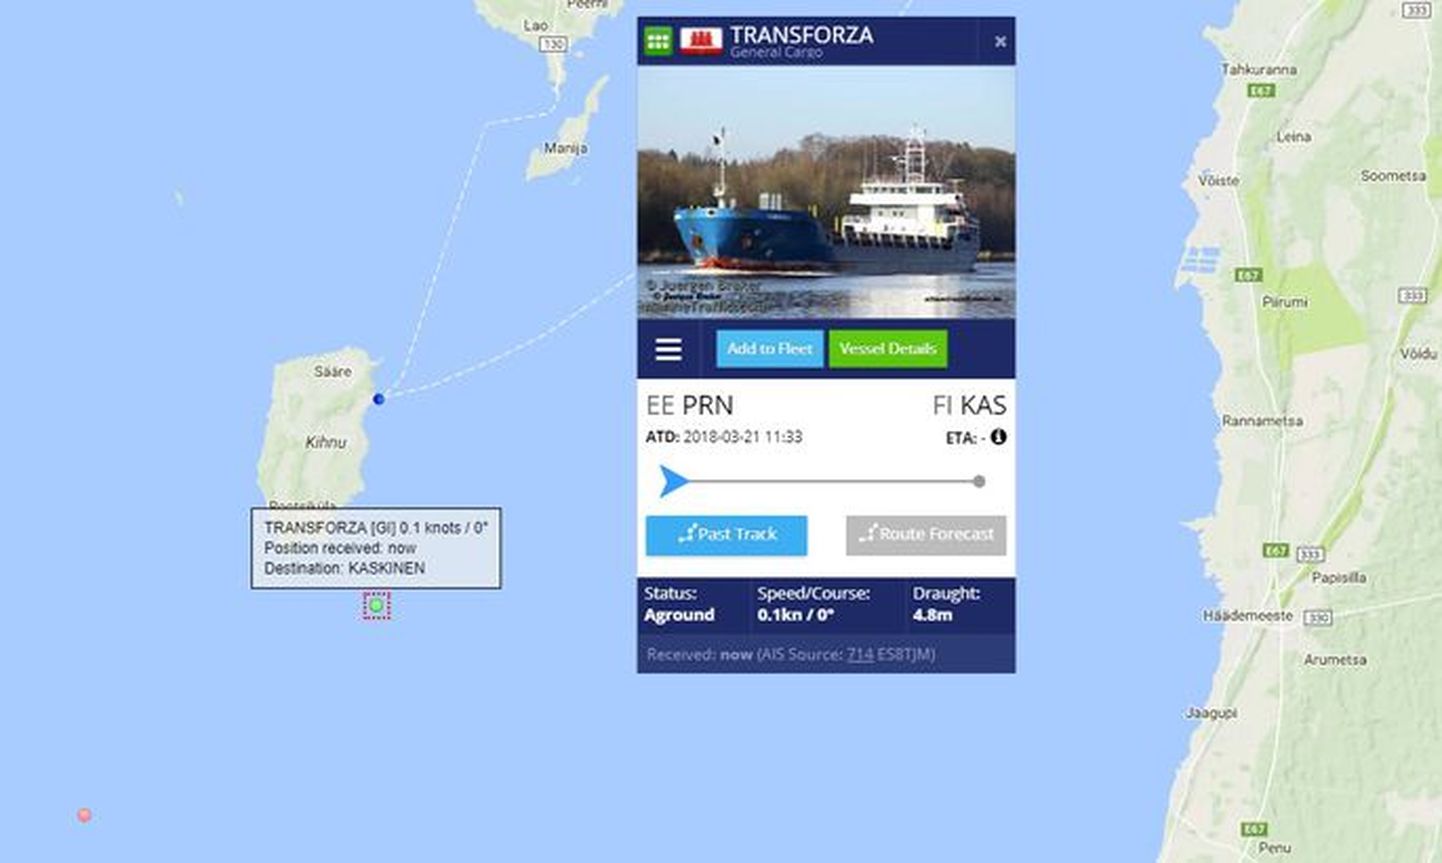 Veebilehelt marinetraffic.com on näha, kuidas kaubalaev Kihnu lõunatipu lähedal juba pikemat aega seisab.